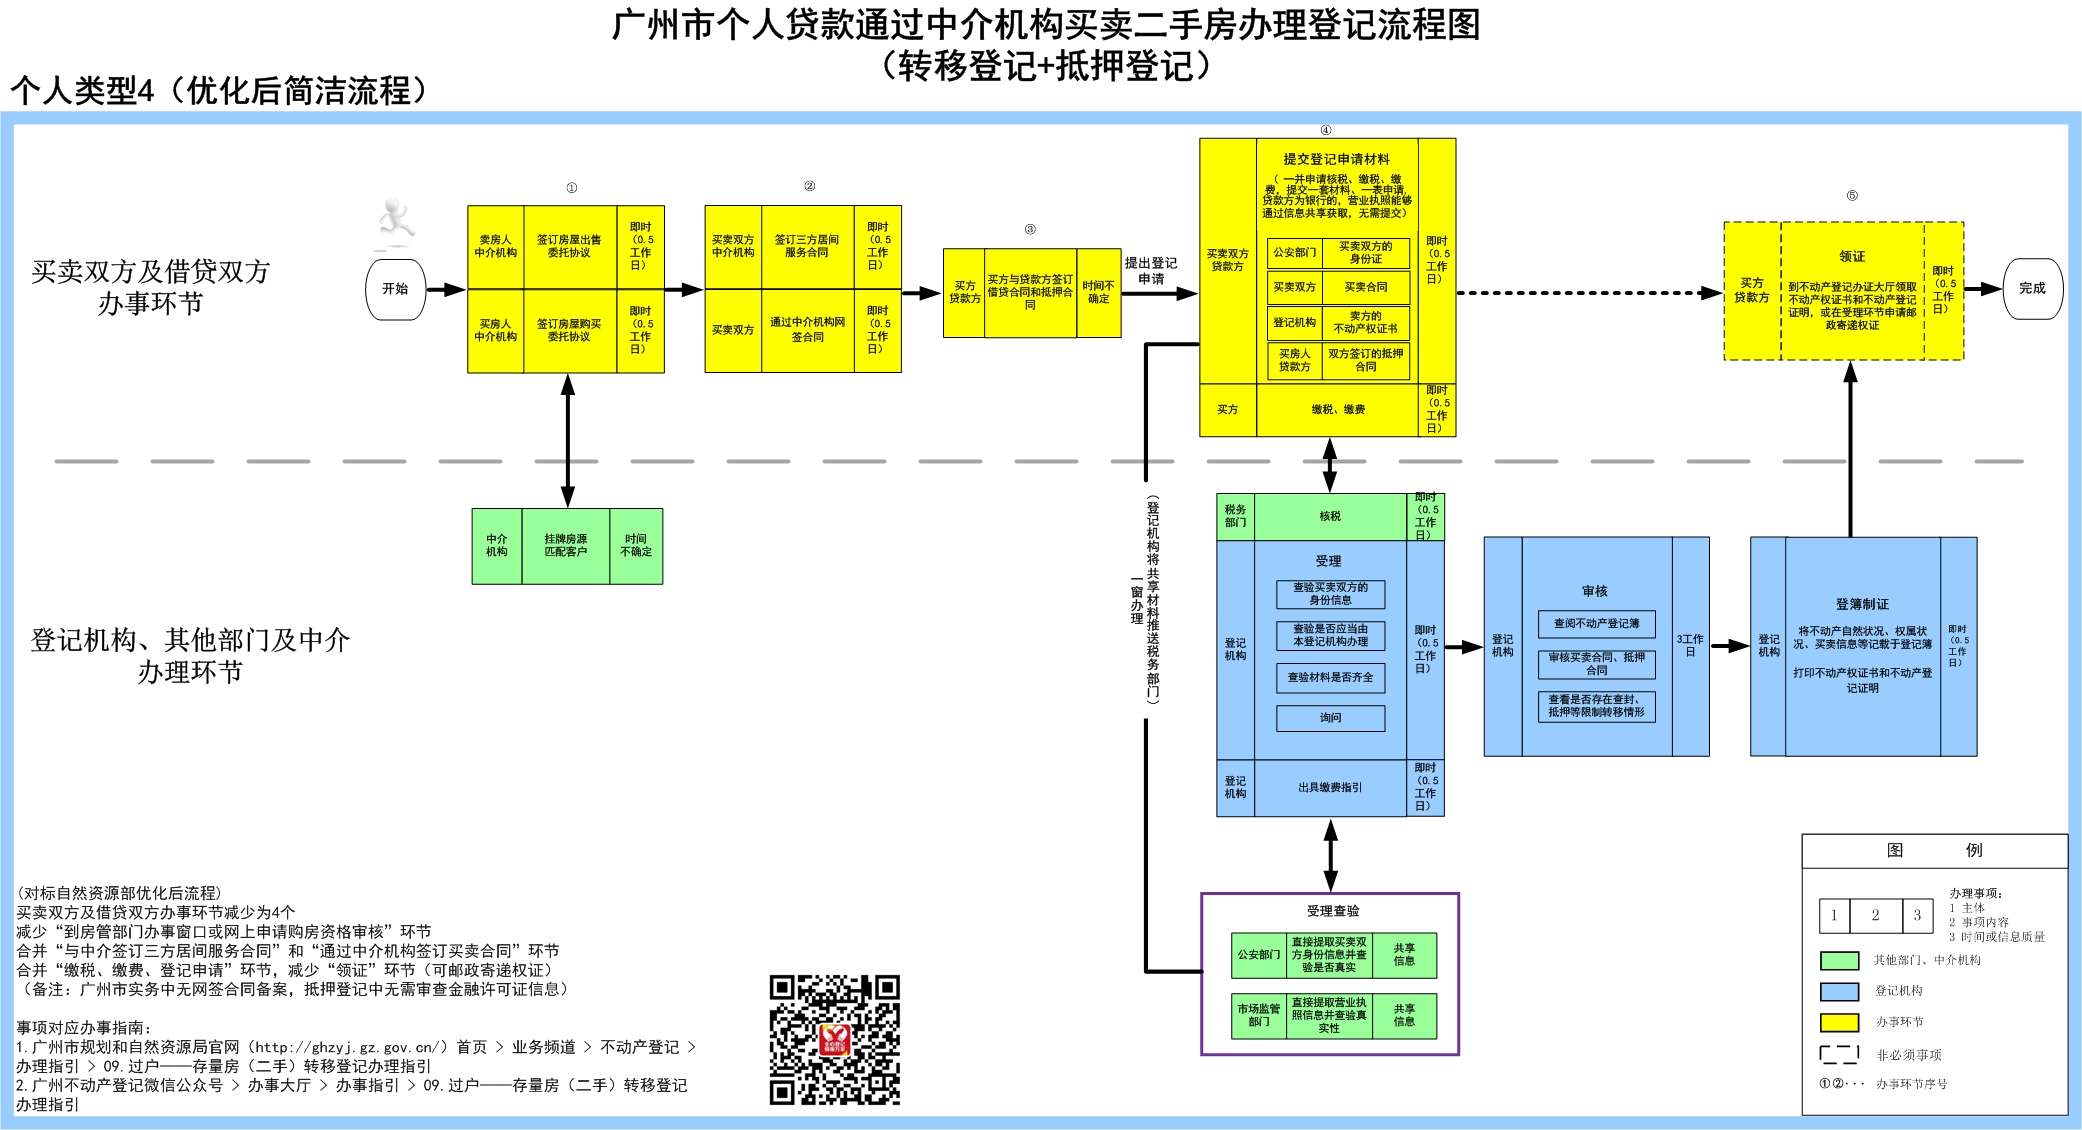 4个人贷款通过中介机构买卖二手房办理登记-广州市.jpg